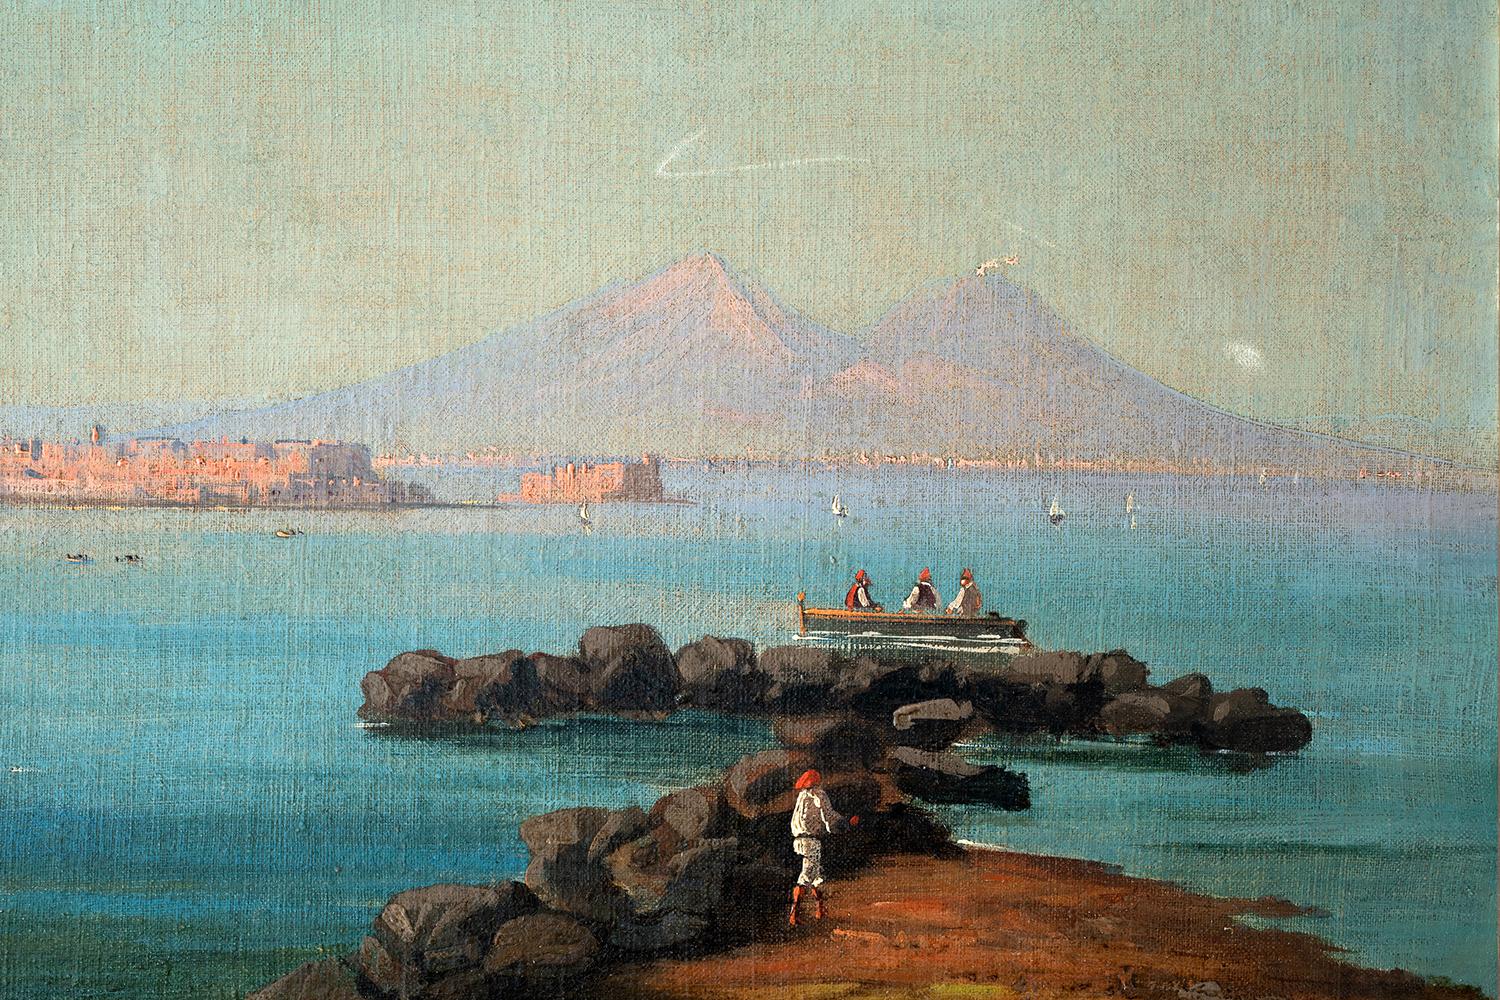  Quatre peintures anciennes représentant quatre vues de Naples attribuées au célèbre peintre napolitain Girolamo Gianni.

Girolamo Gianni. Naples 1837/Malte 1896.
Peintre napolitain, il a commencé à peindre dans sa ville natale, se consacrant aux